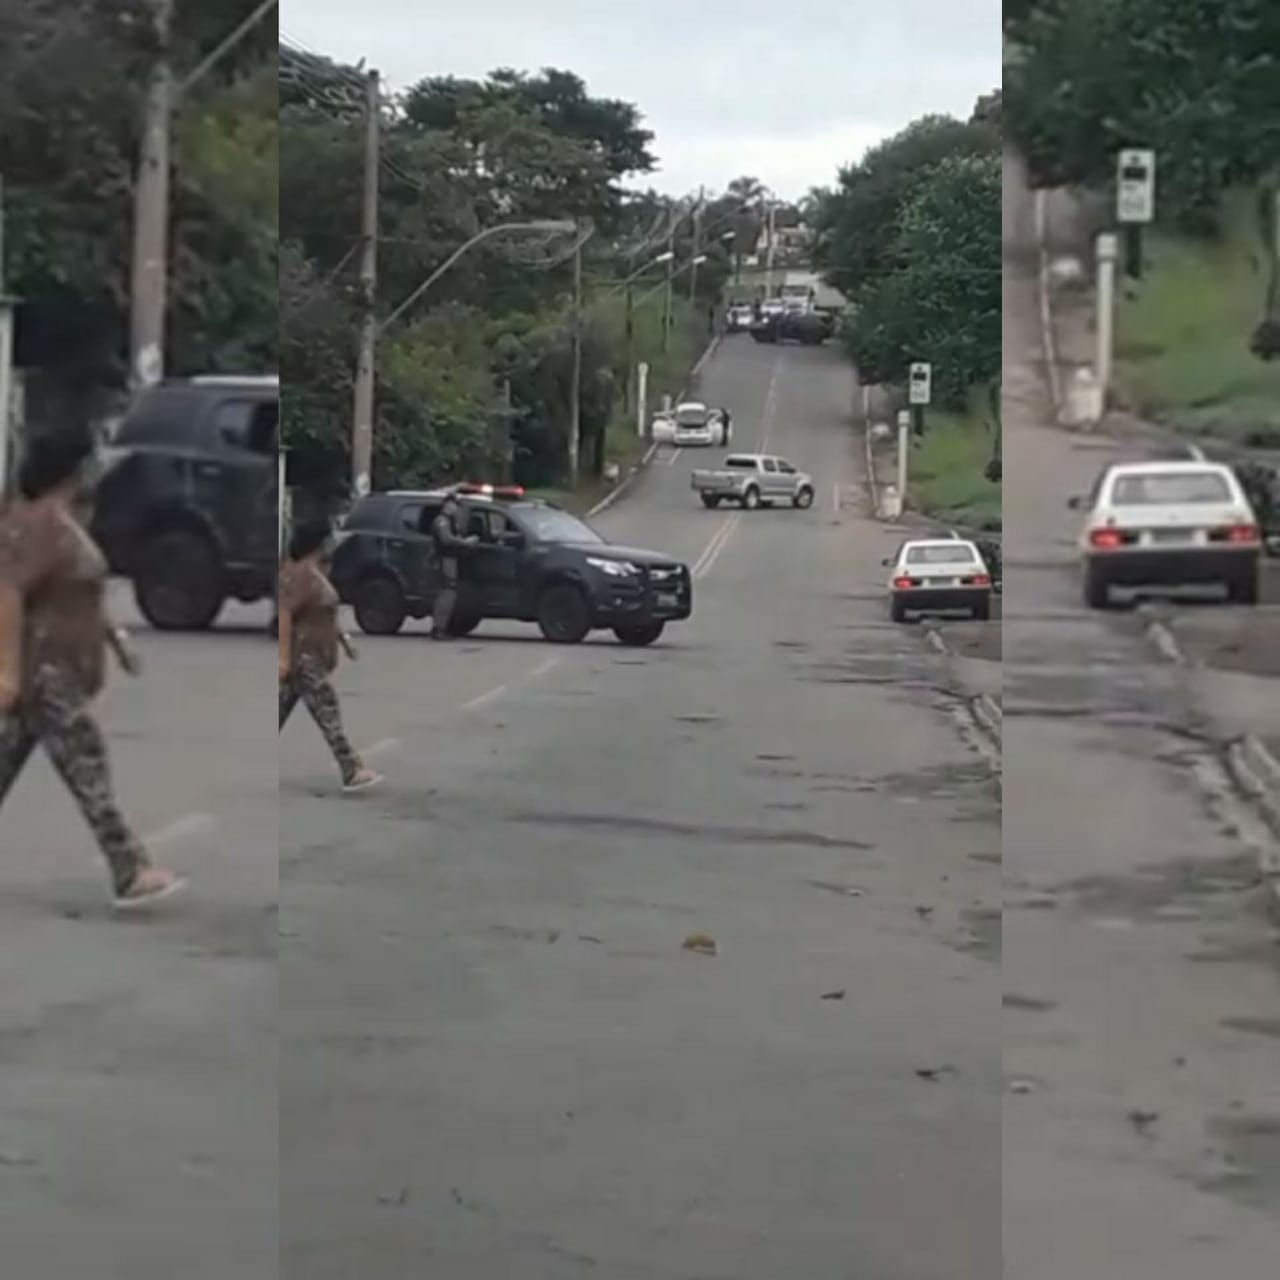 Dois homens que estavam em um veículo roubado morreram após confronto com militares do Graer na manhã desta quinta-feira (25), em Goiânia. (Foto: reprodução)